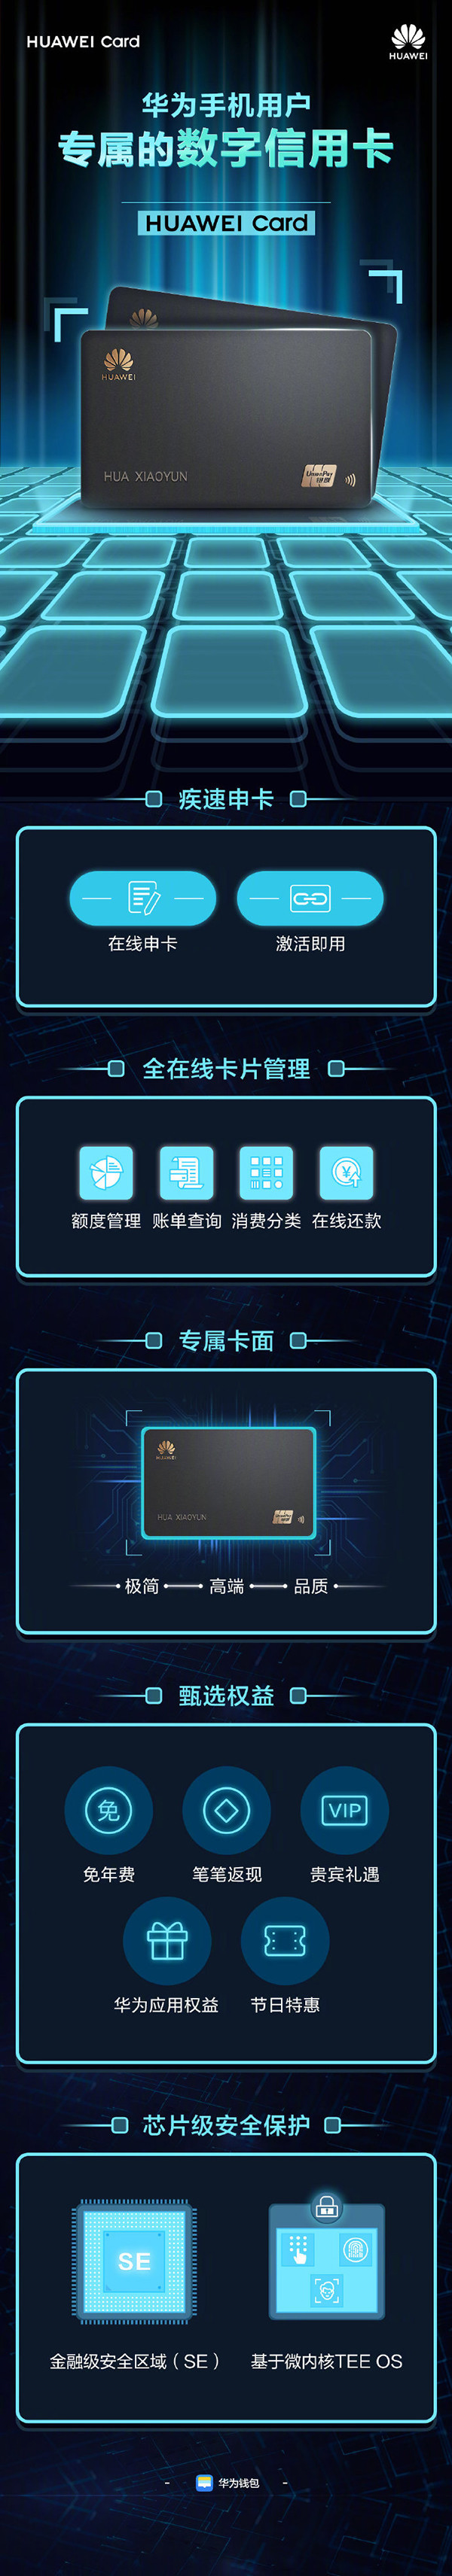 一张图看懂Huawei Card 华为用户专属还有多项权益